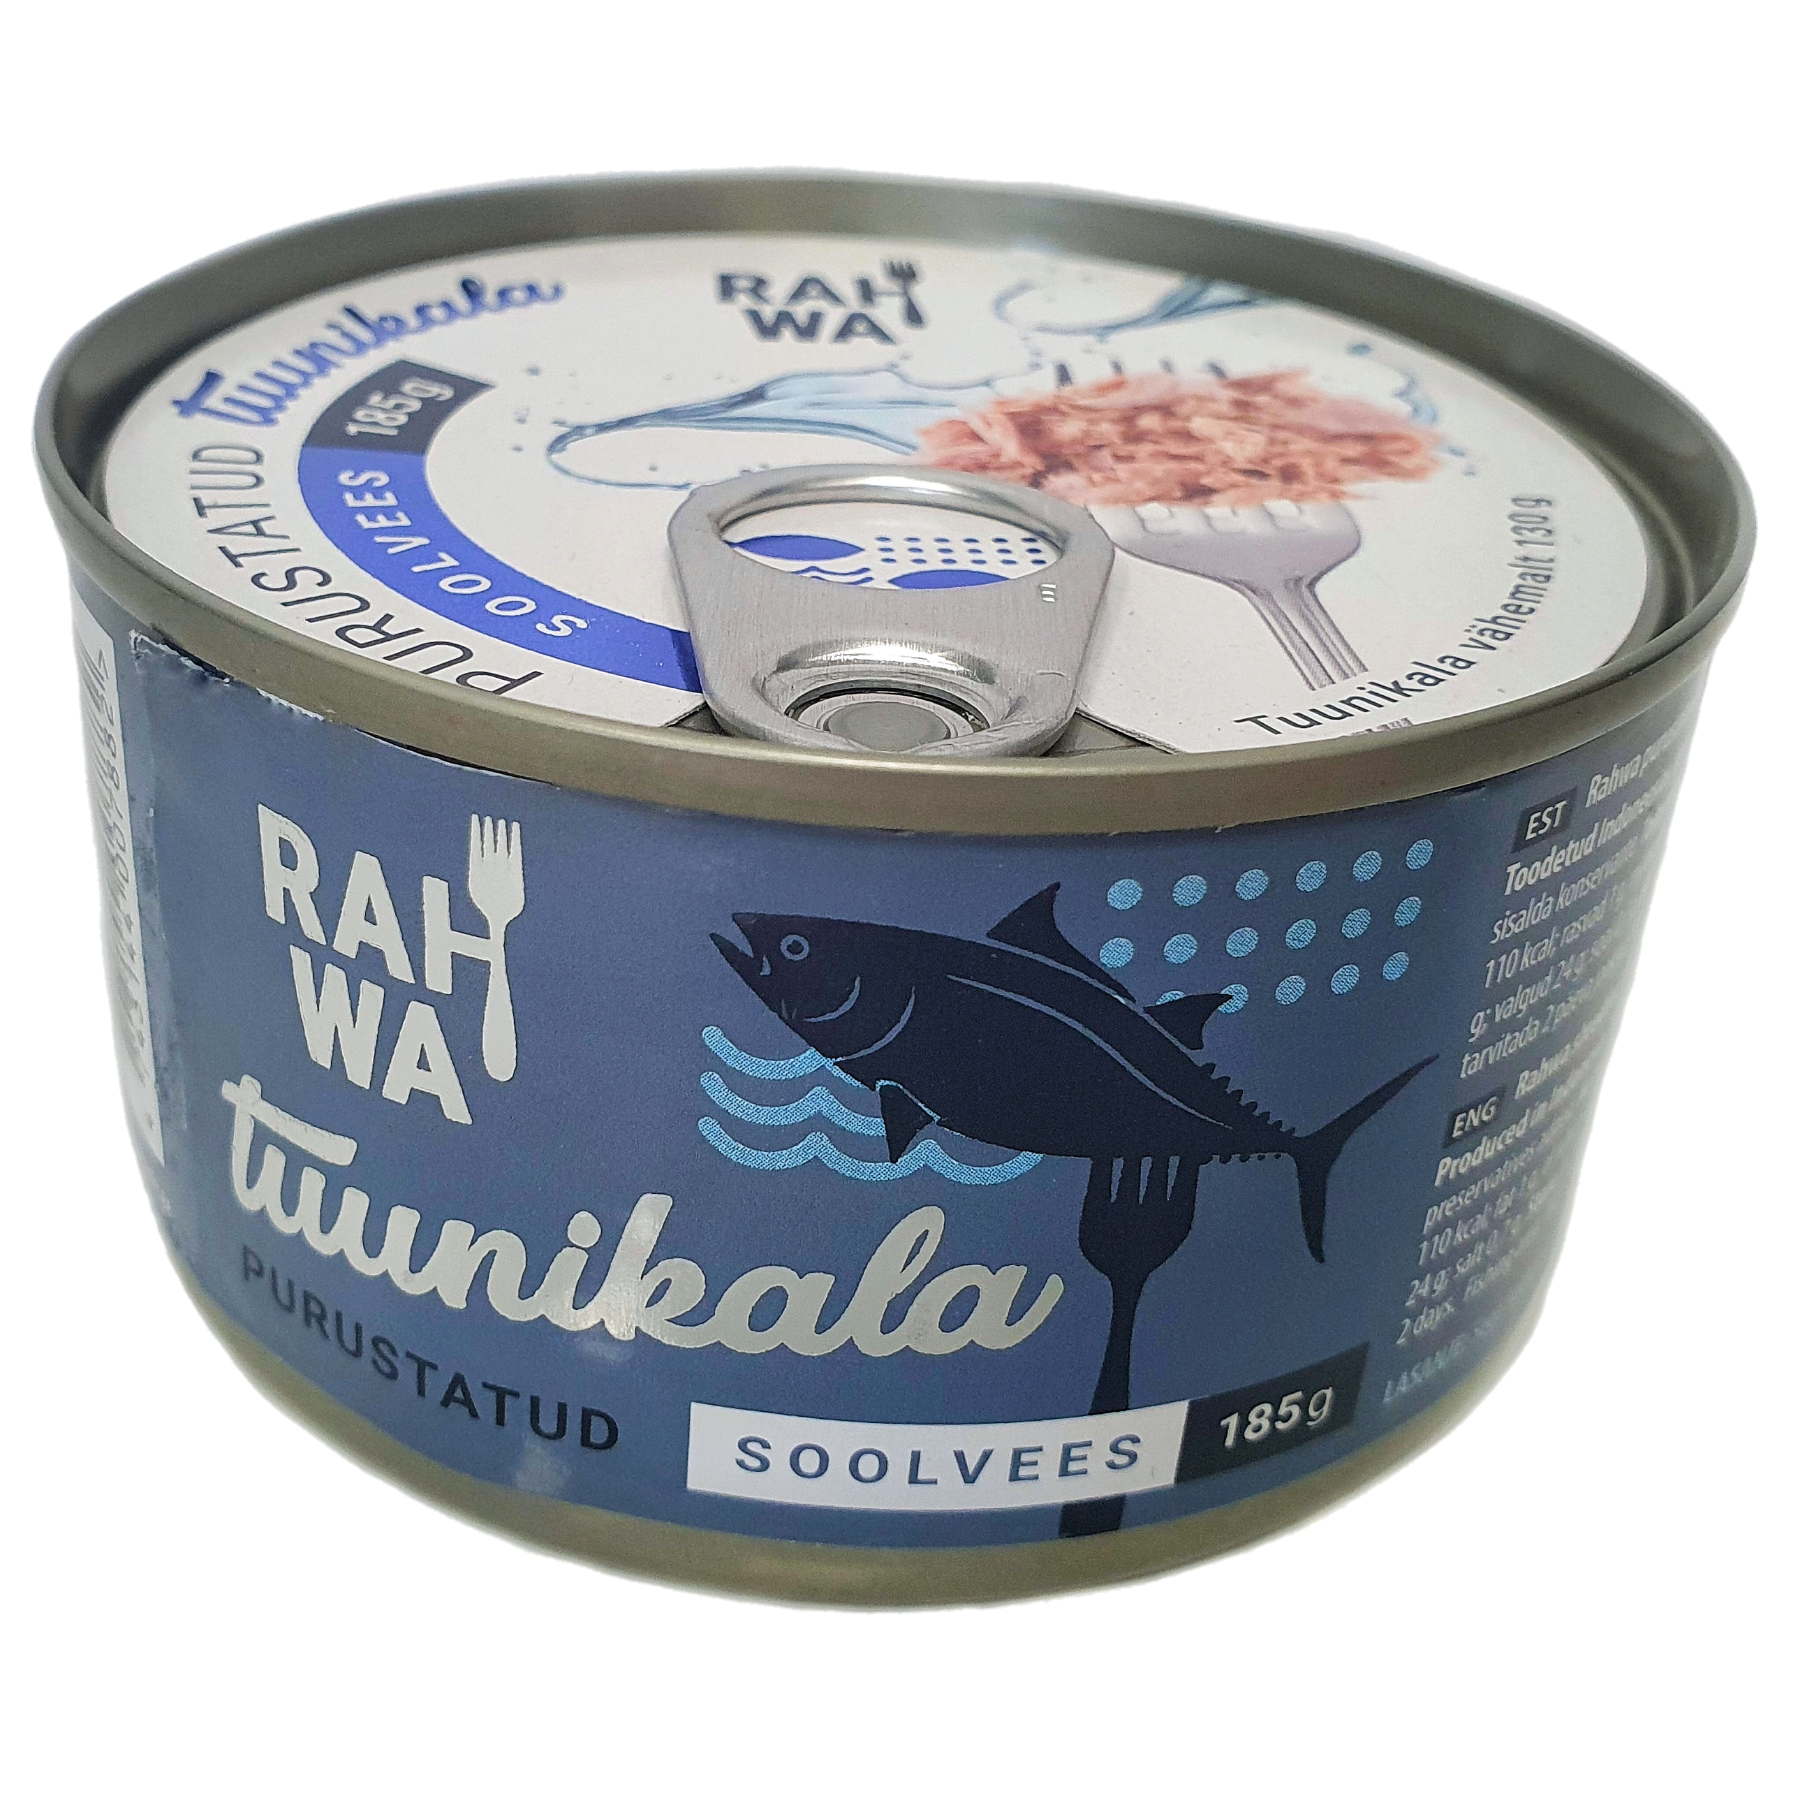 Rahwa shredded tuna in brine 185g